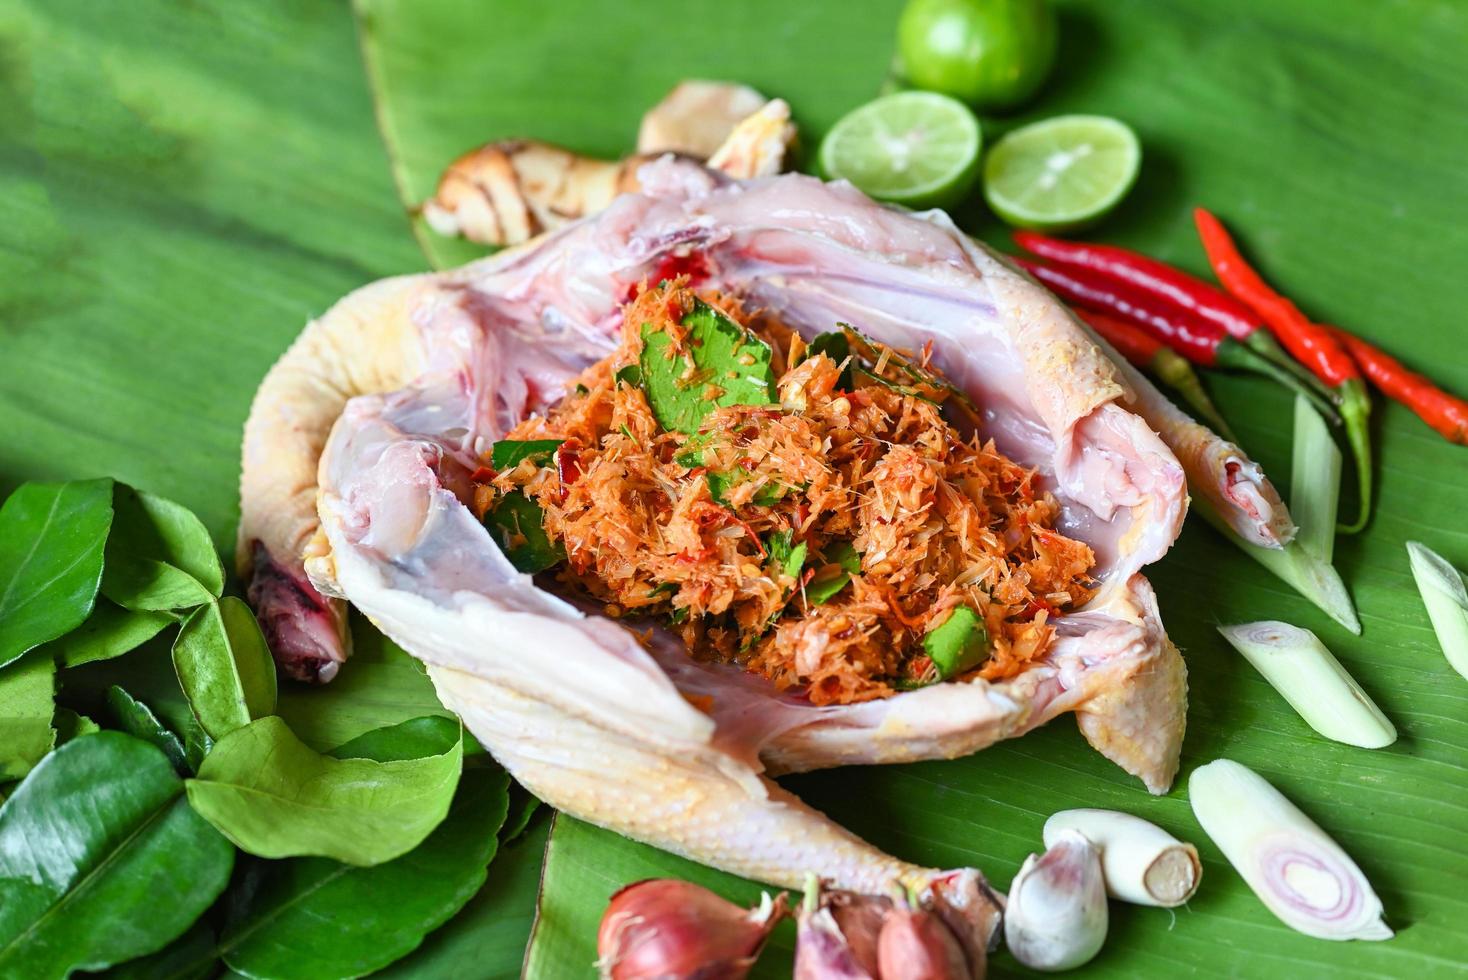 cuisine thaïlandaise avec poulet frais légumes herbes et épices ingrédients sur fond de feuille de bananier, poulet cru avec citron vert échalote ail galanga citronnelle et piment photo